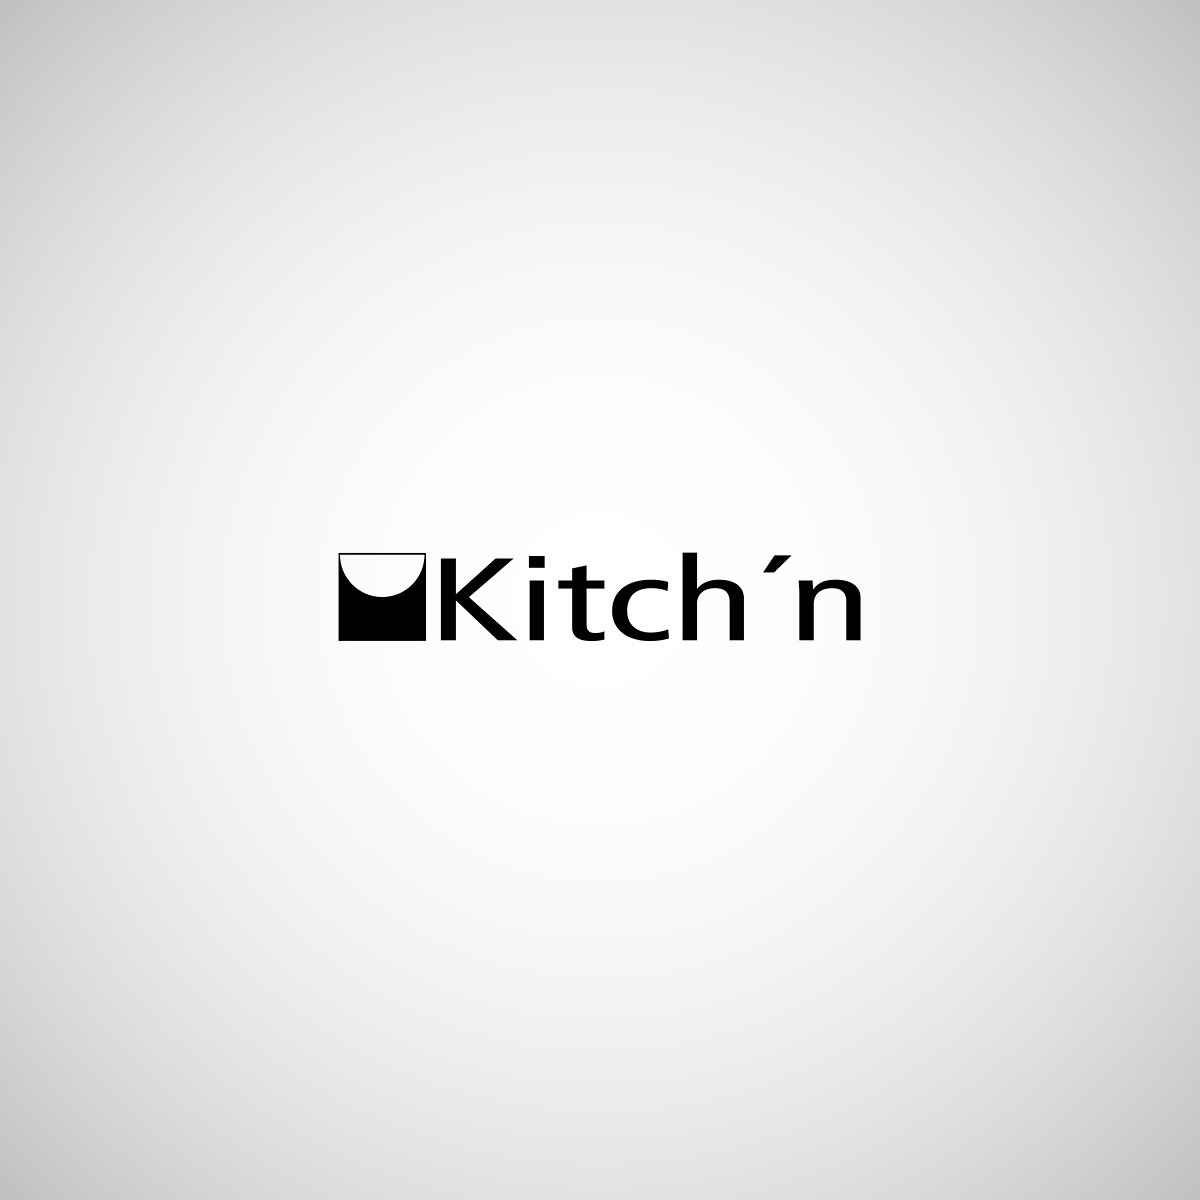 Kitchn_1200x1200.jpg